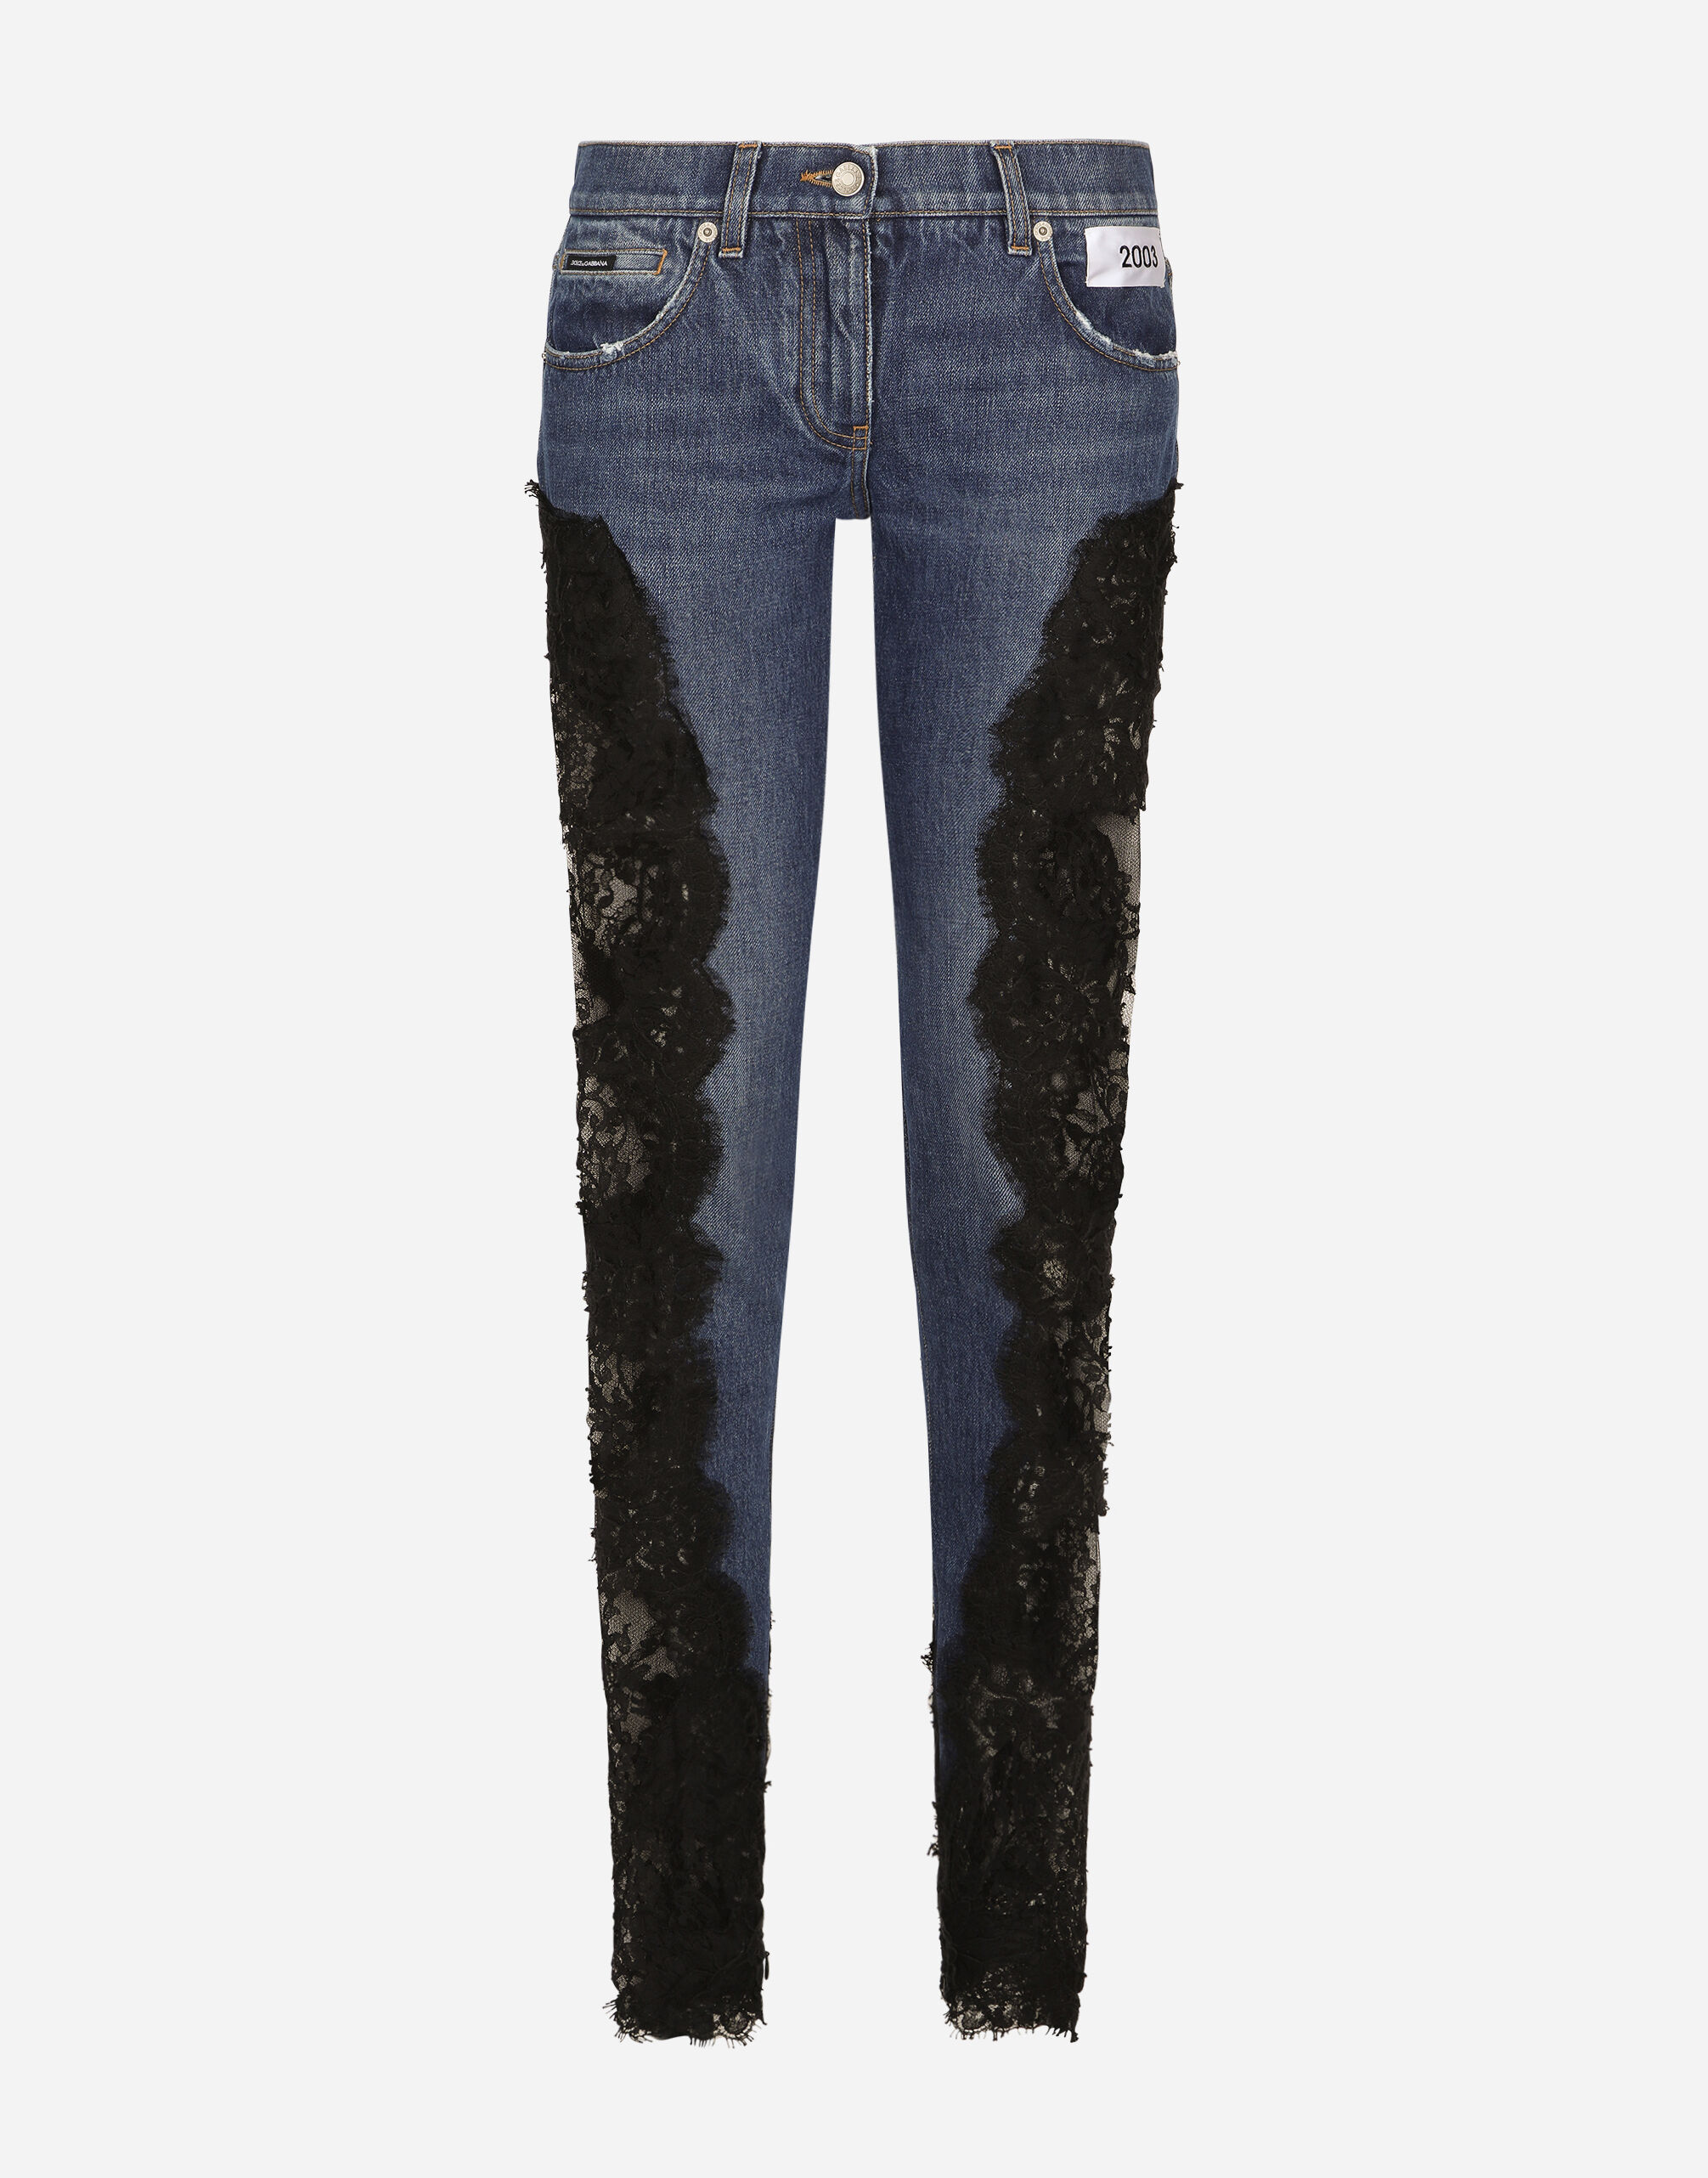 Flare lace blue jeans pants - Wapas